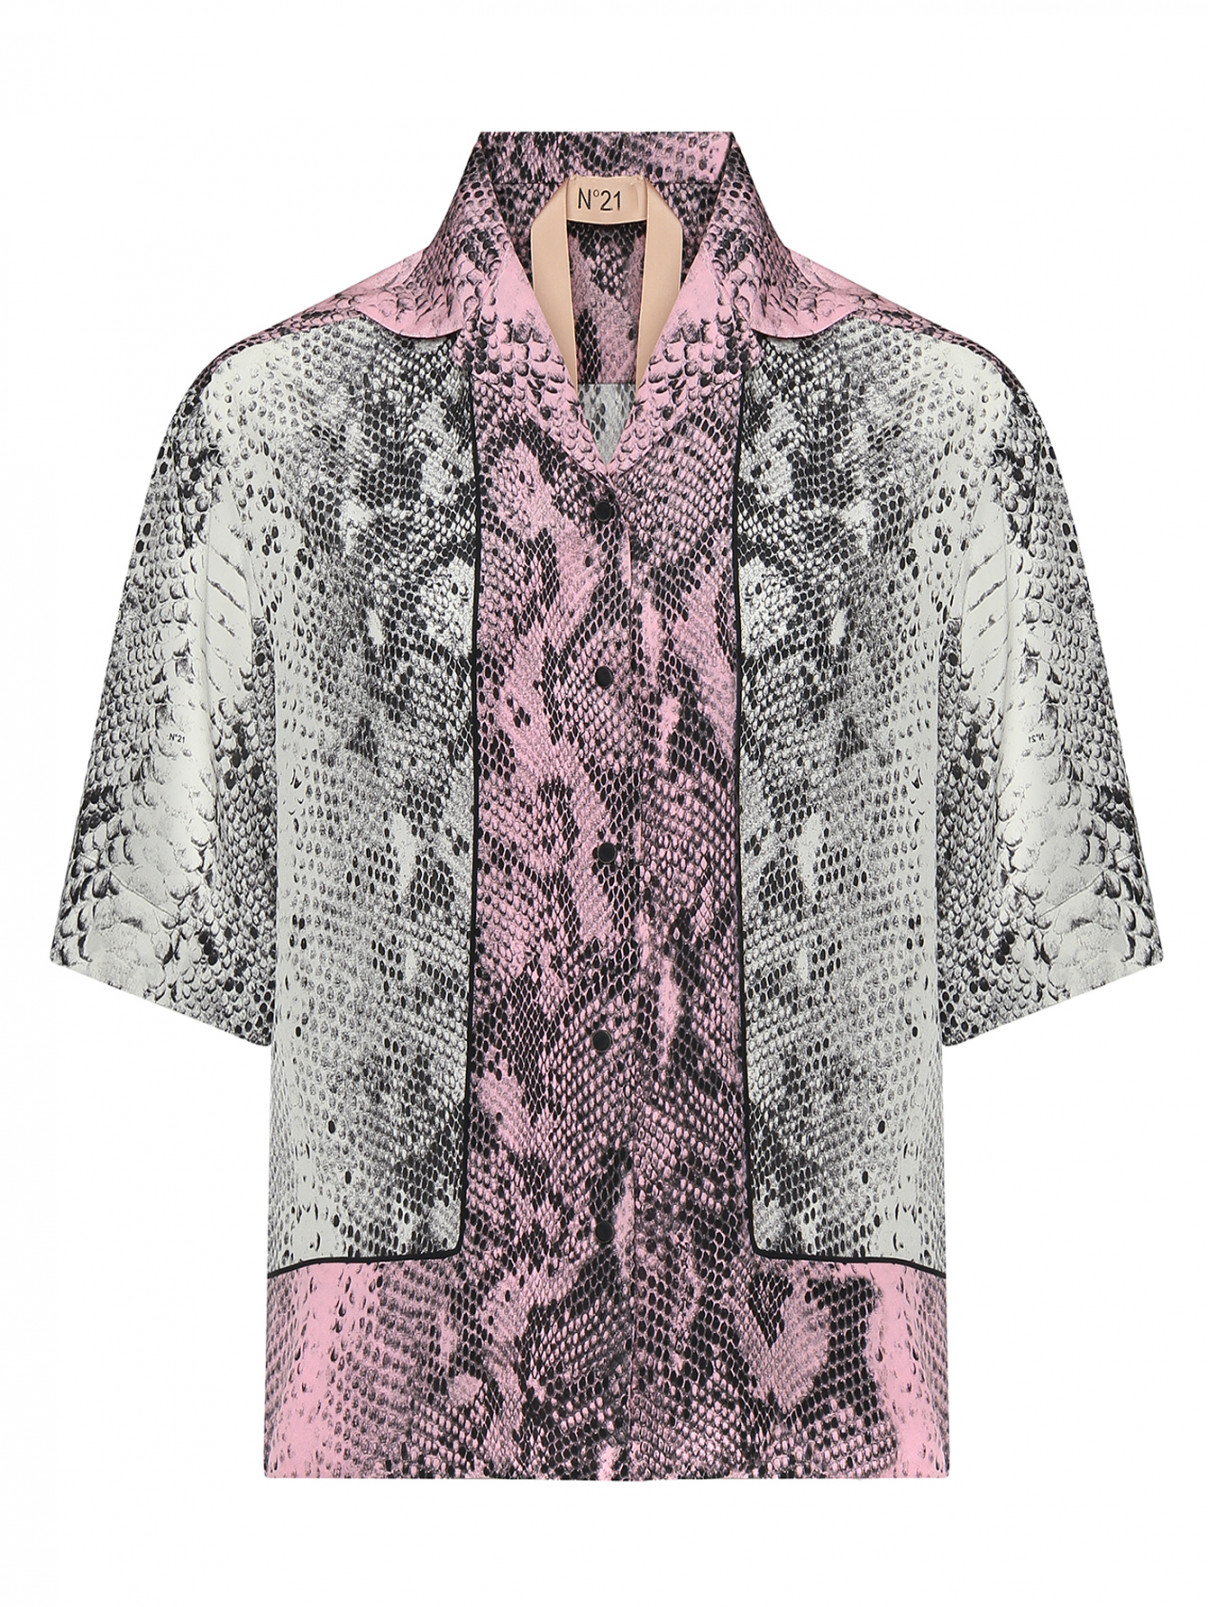 Блуза шелковая с животным узором N21  –  Общий вид  – Цвет:  Узор